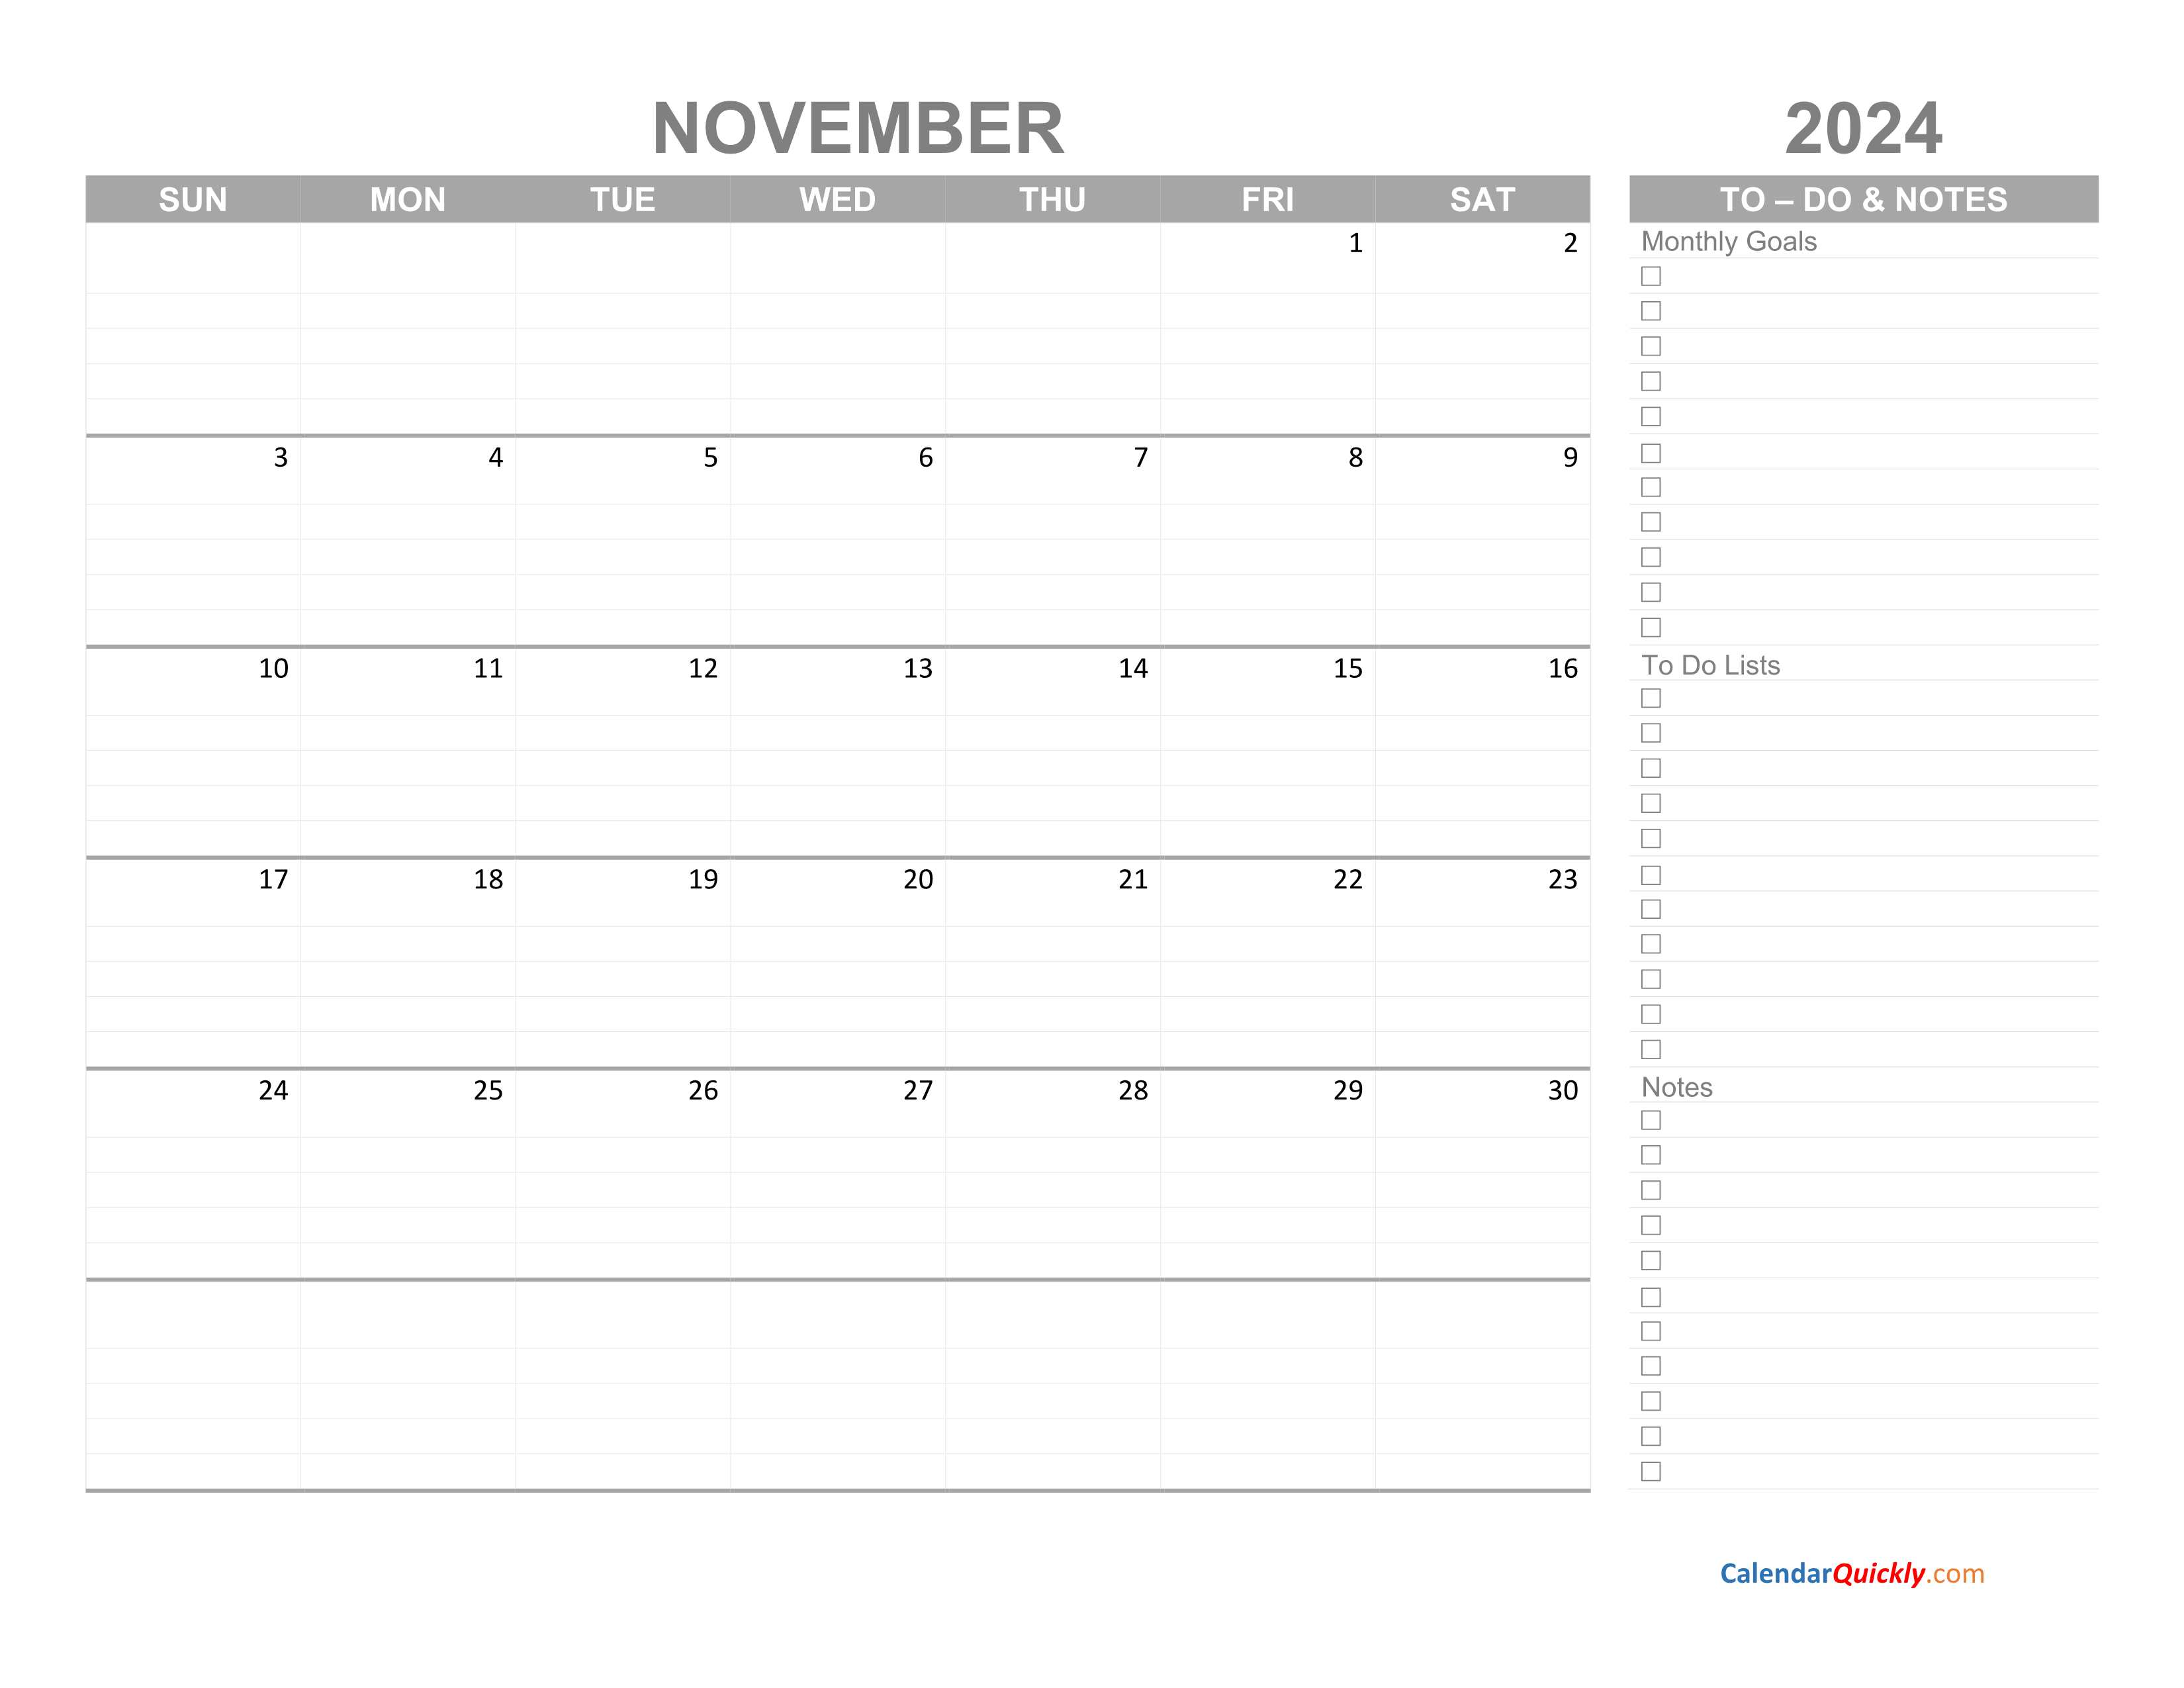 november-2024-calendar-with-to-do-list-calendar-quickly